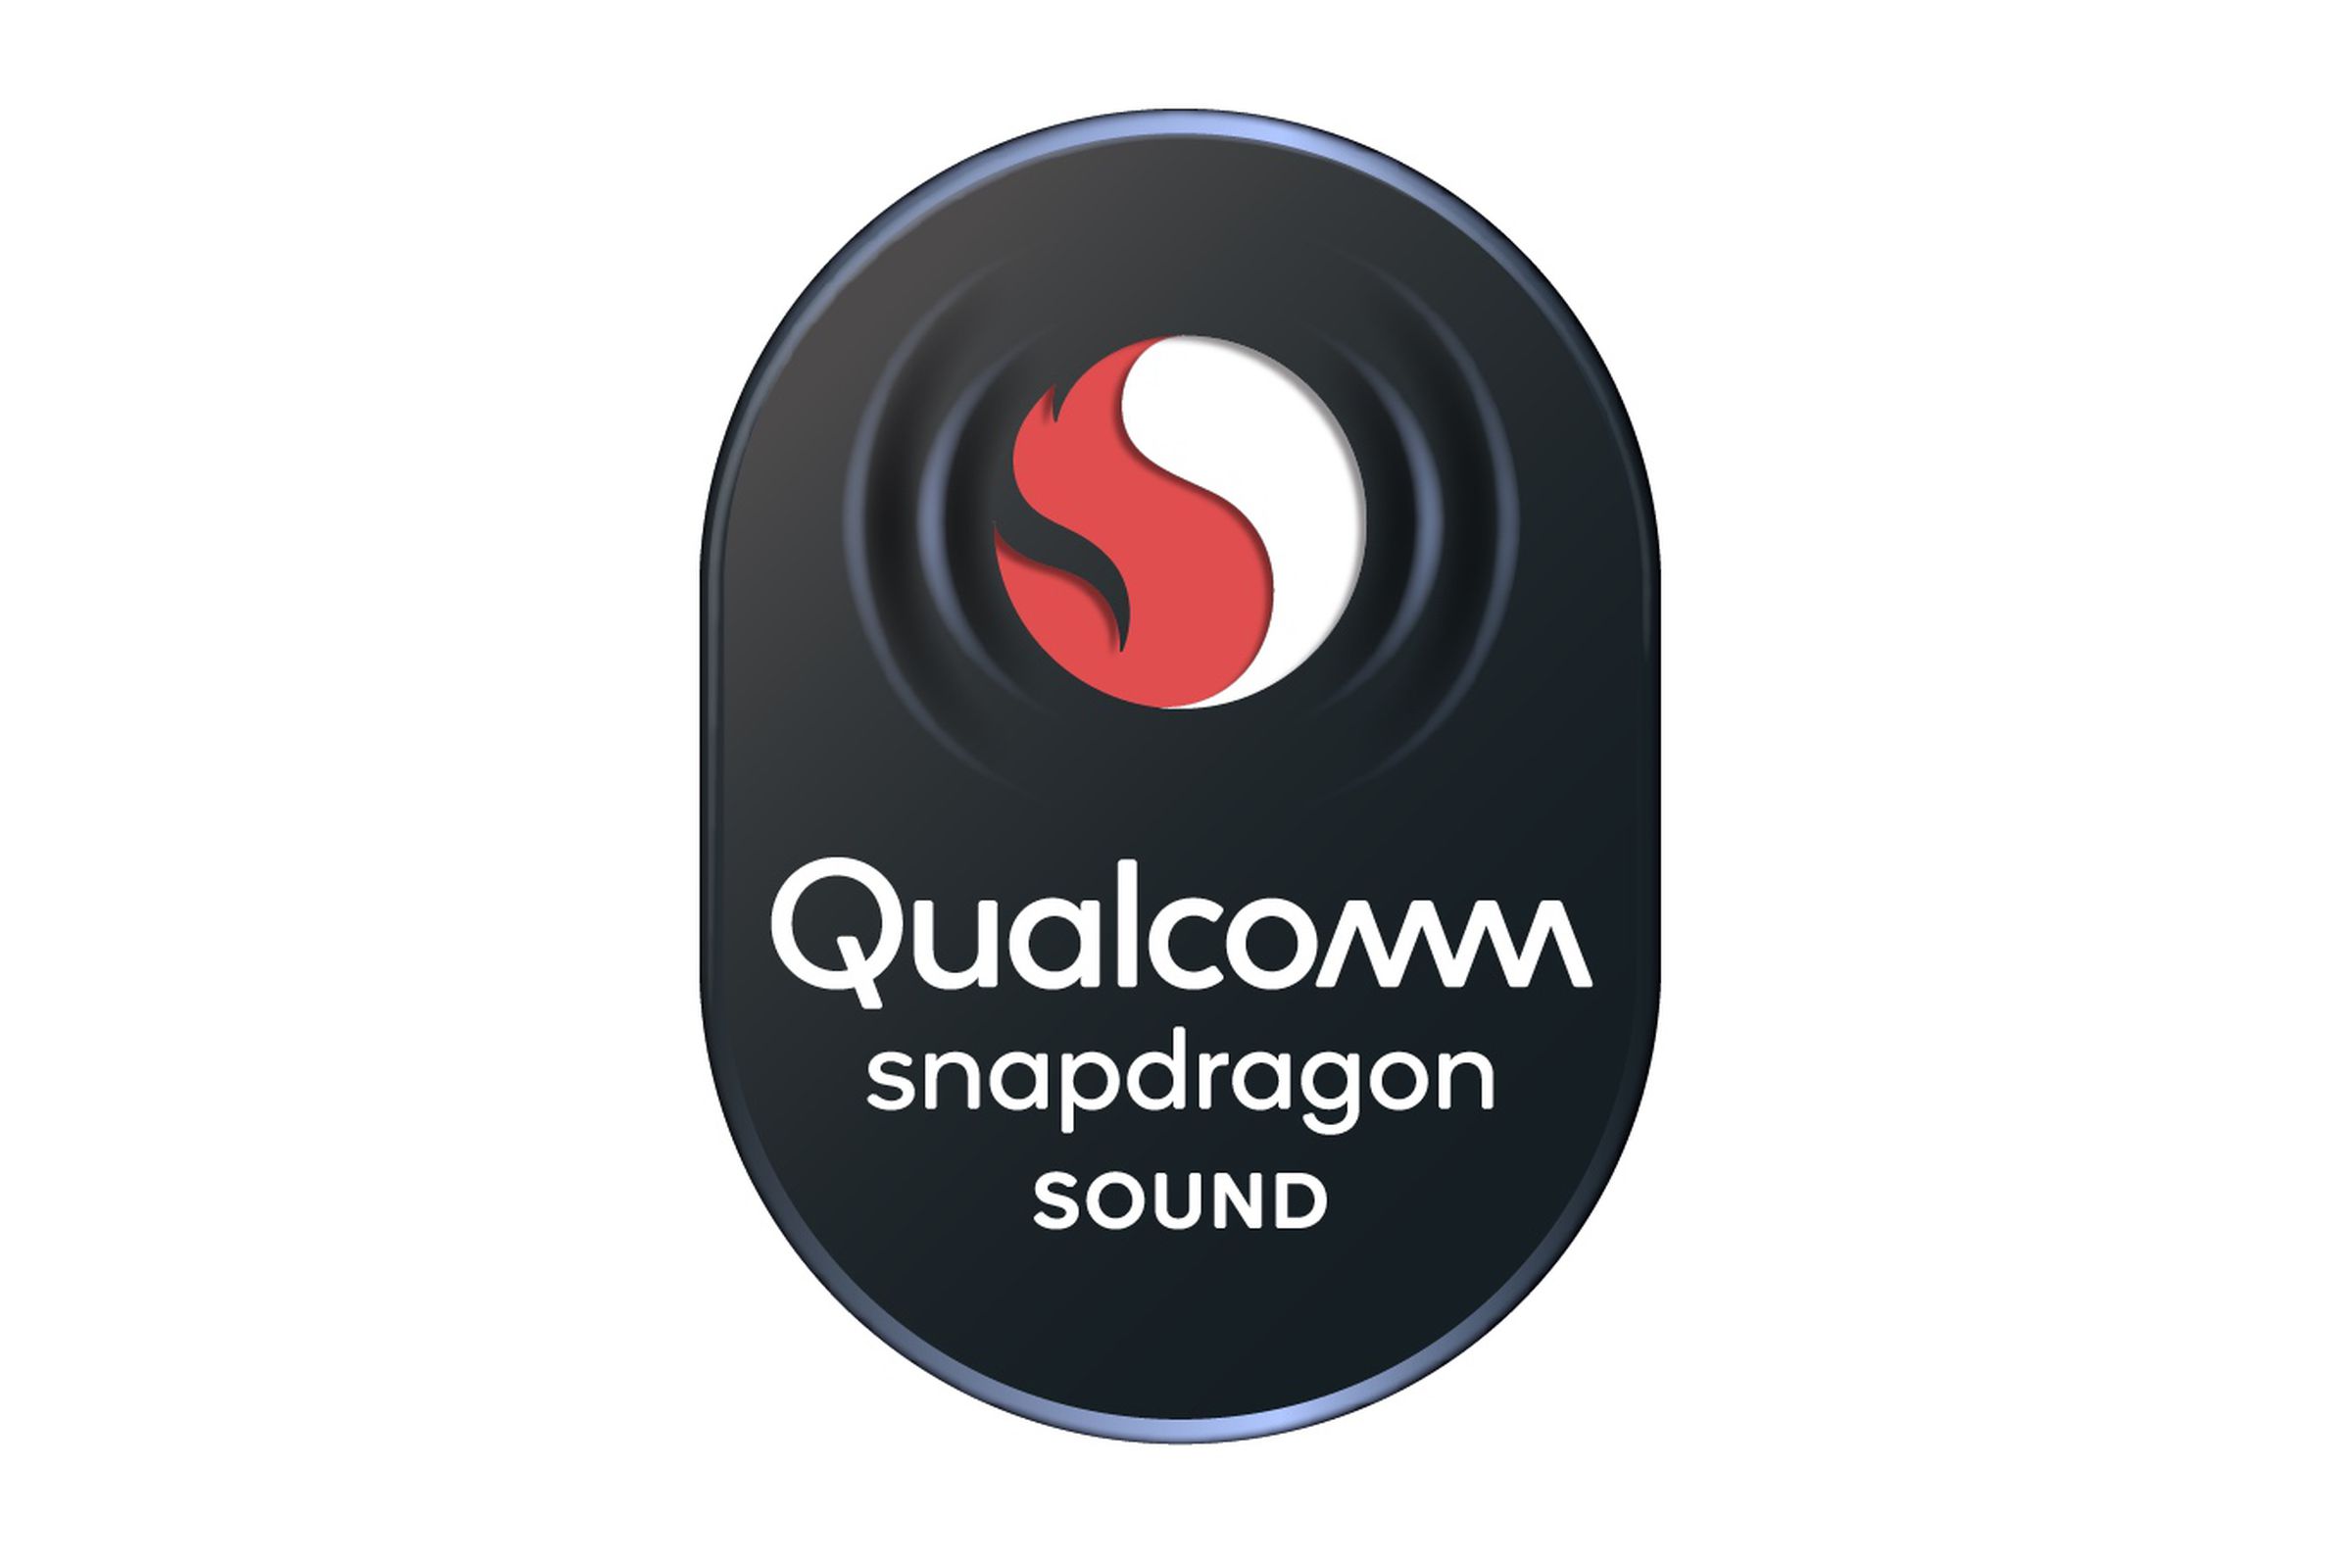 Звук новый заказ. Audiotechnika с технологией Snapdragon Sound.